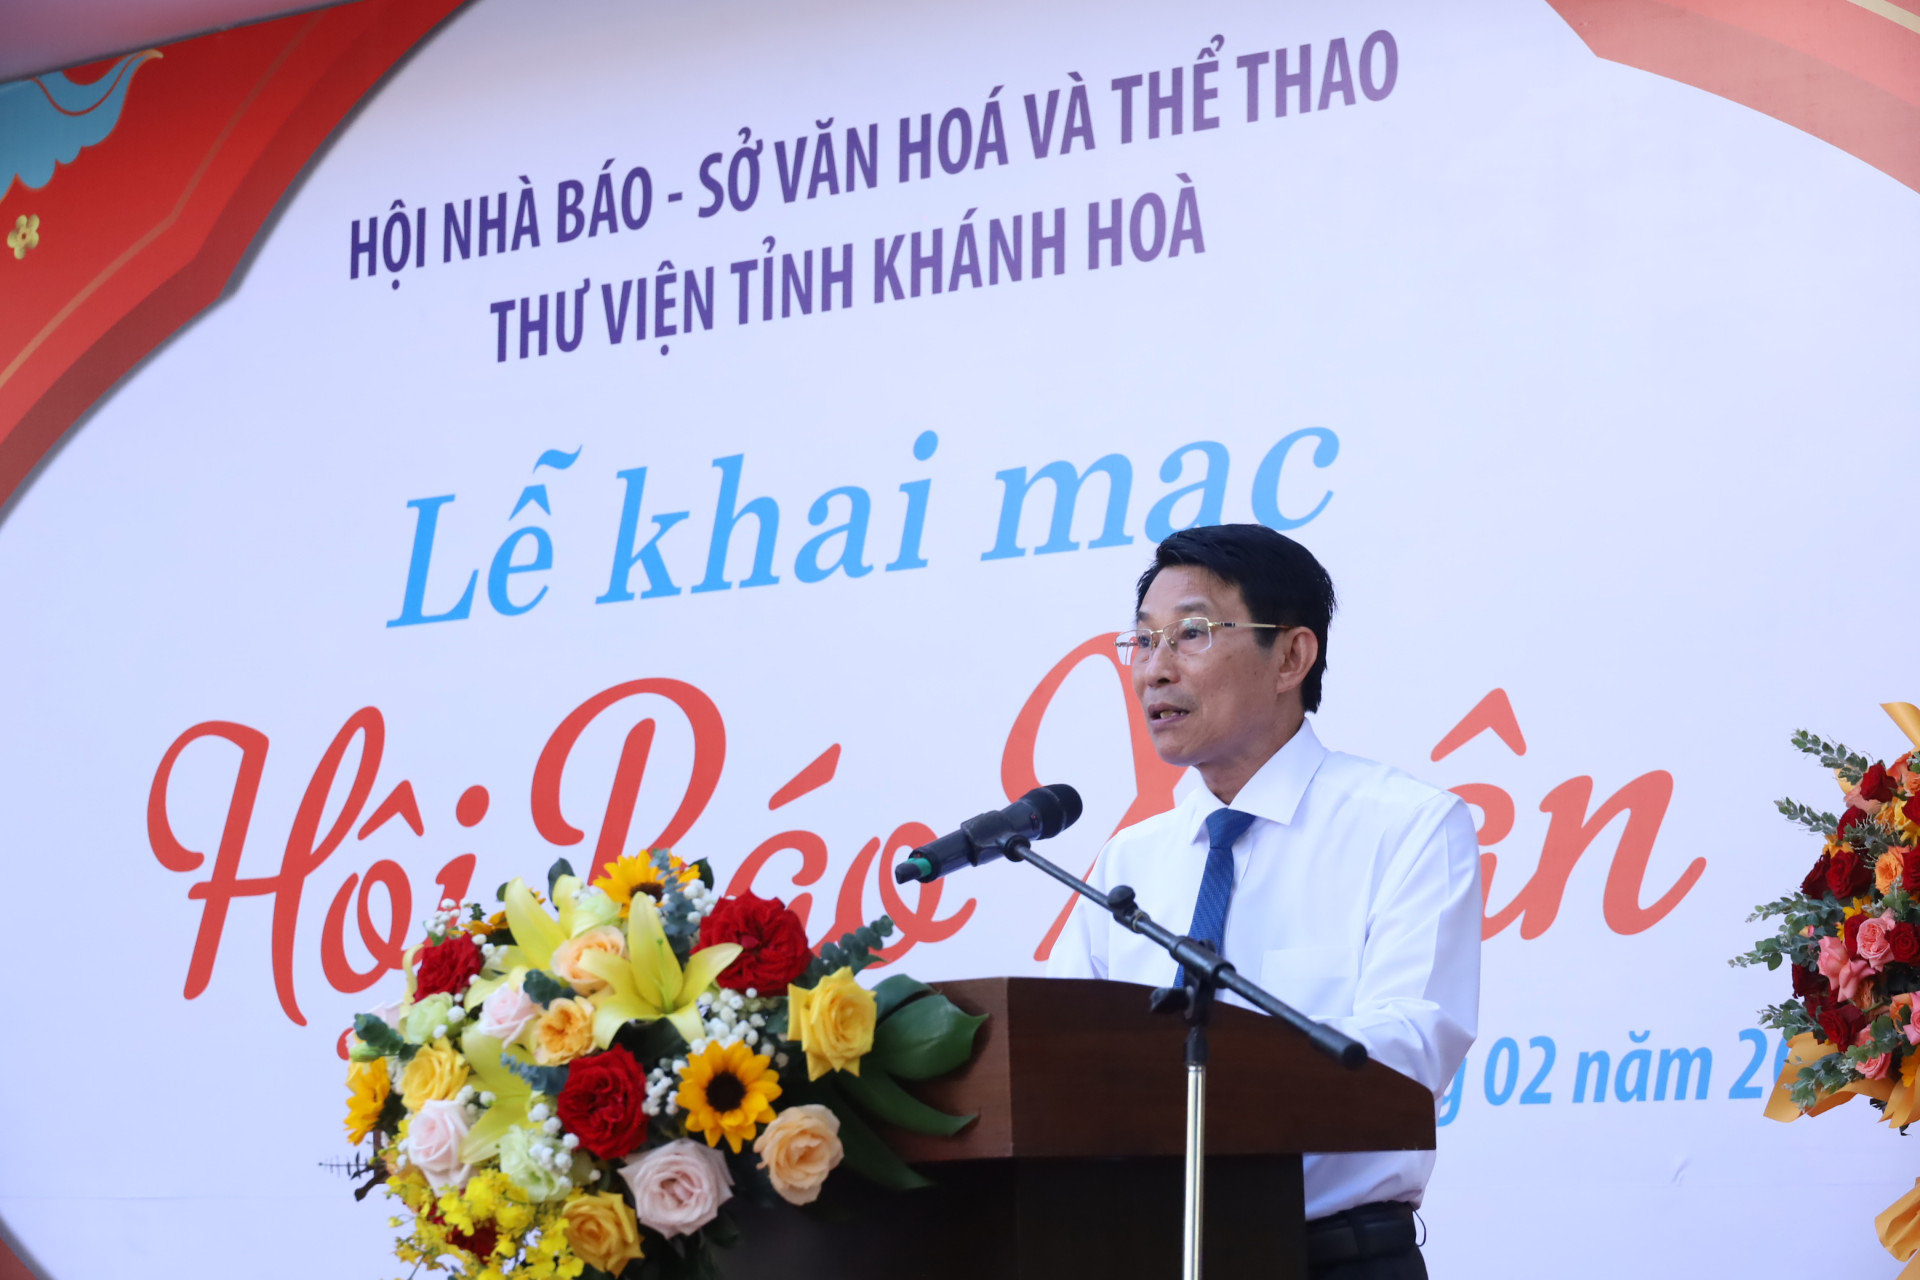 Đồng chí Đinh Văn Thiệu phát biểu tại buổi lễ.